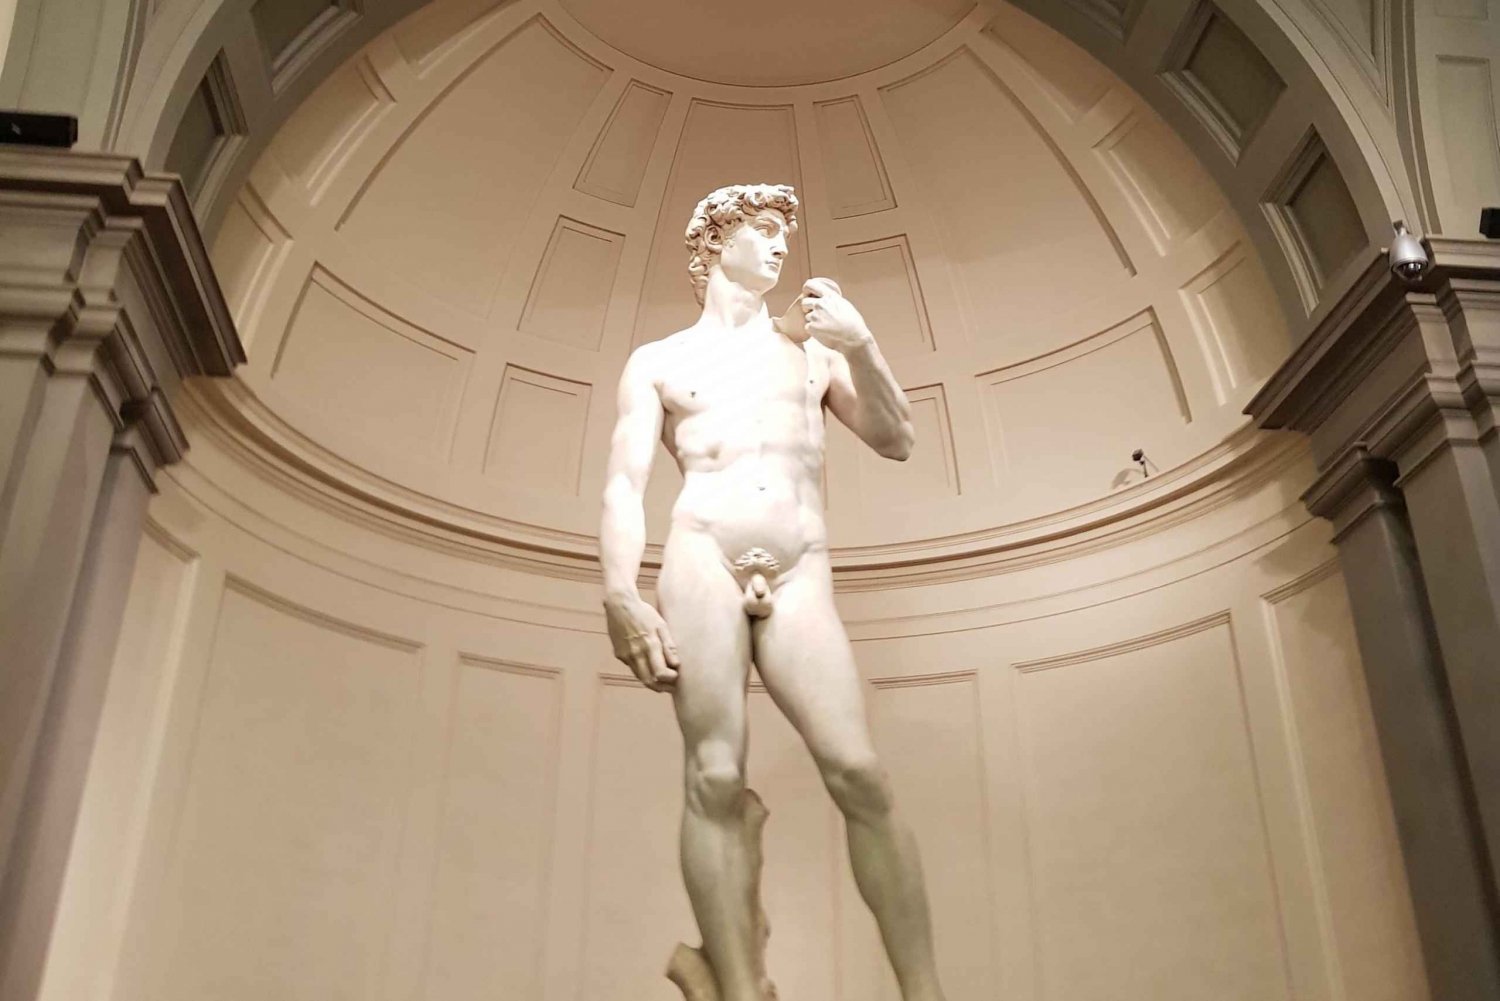 Firenze: Yksityinen Accademia-galleriakierros